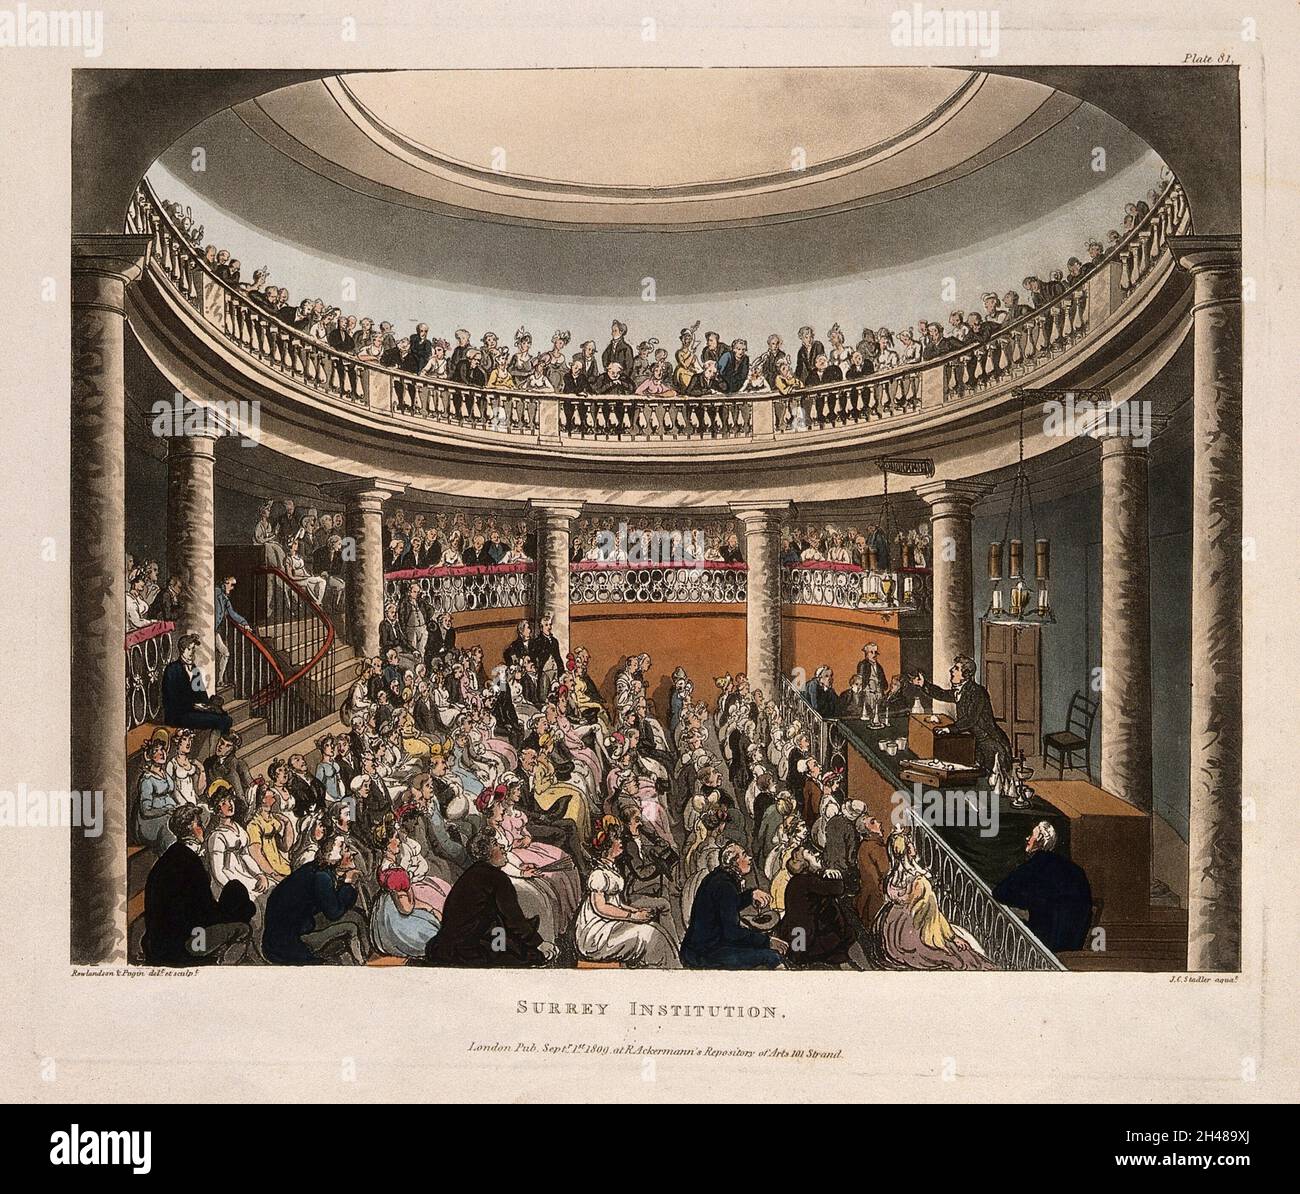 Surrey Institution, Blackfriars Road, Southwark, Londra: L'interno della rotonda, F. Accum lezioni. Acquatint colorato da J. C. Stadler, 1809, dopo T. Rowlandson e A. C. Pugin. Foto Stock